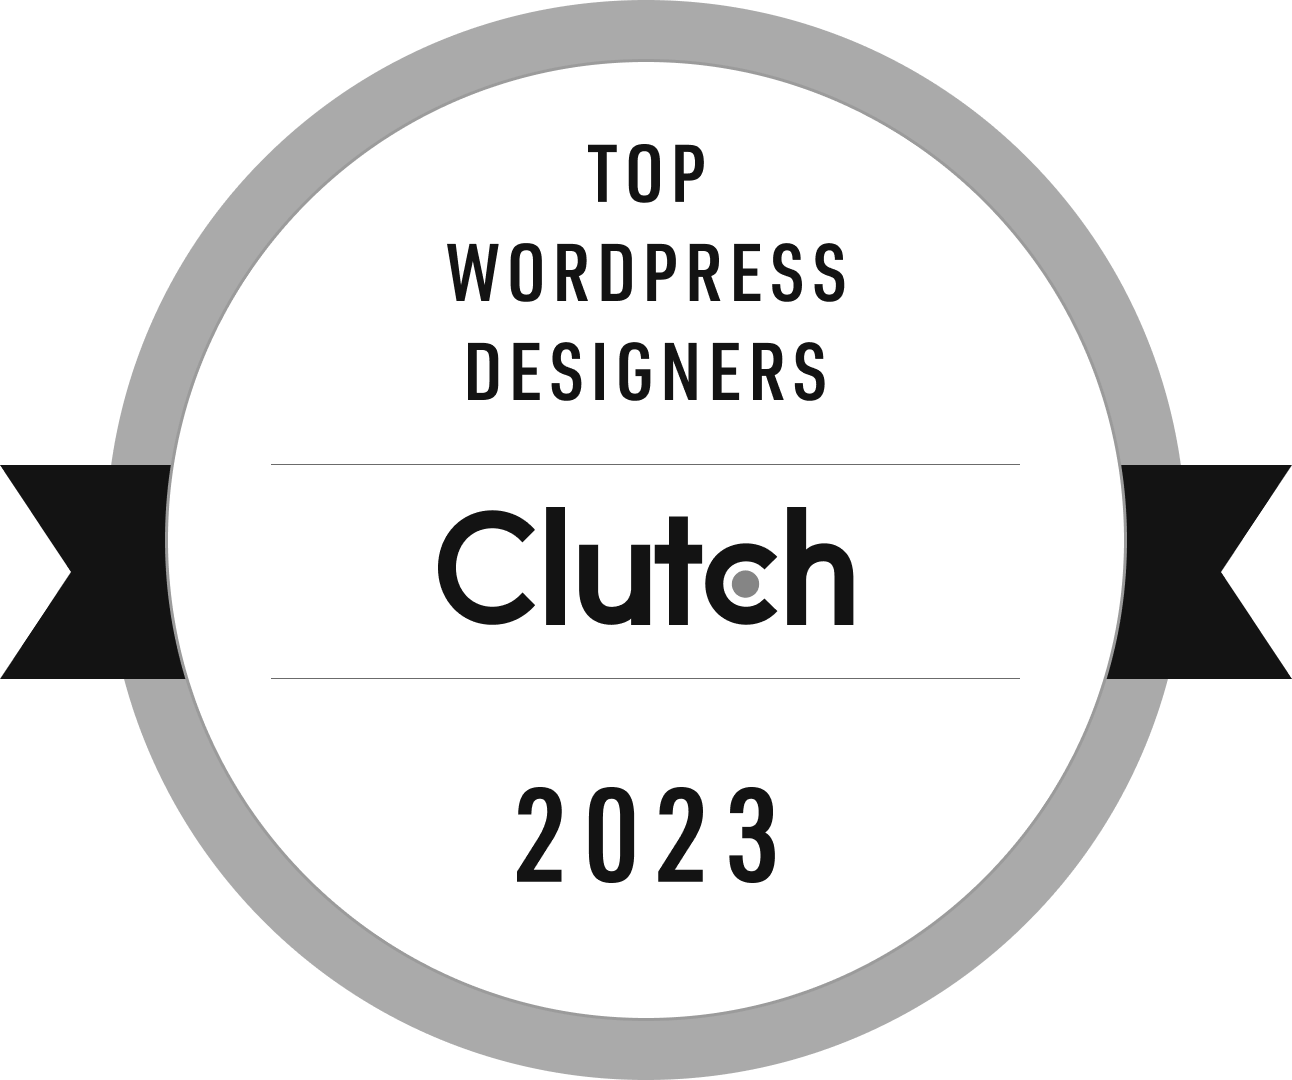 Clutch Top Wordpress Designers Badge 2023